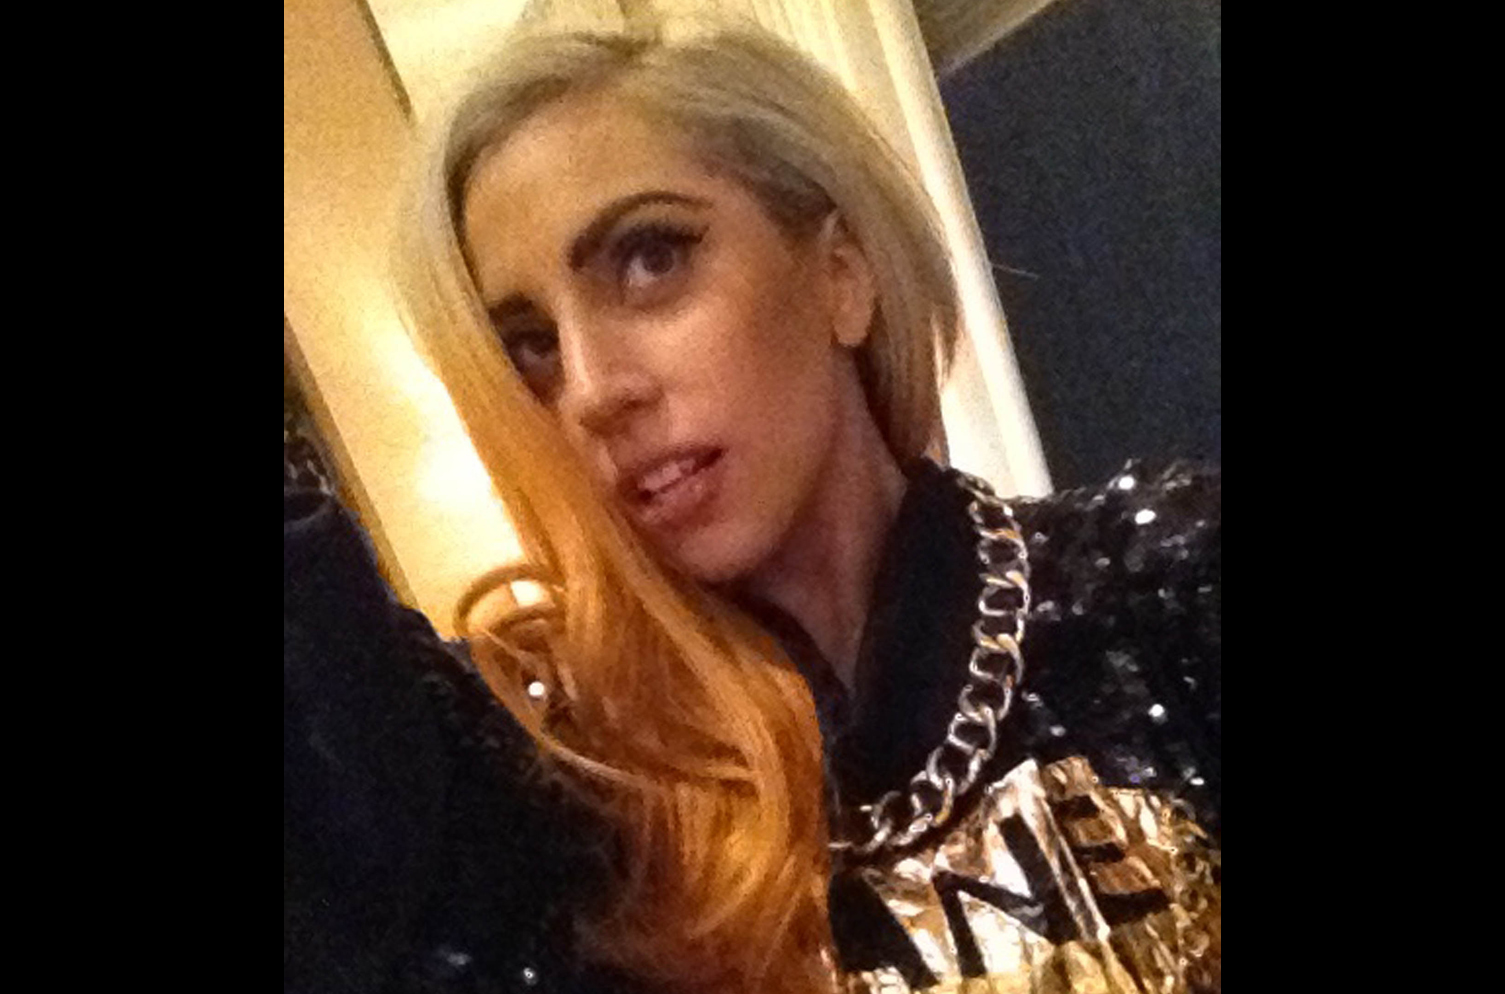 Trots att en sökning på hennes namn genererar miljoner bilder på henne tar Lady Gaga gärna kort på sig själv med sin sunkiga mobilkamera.